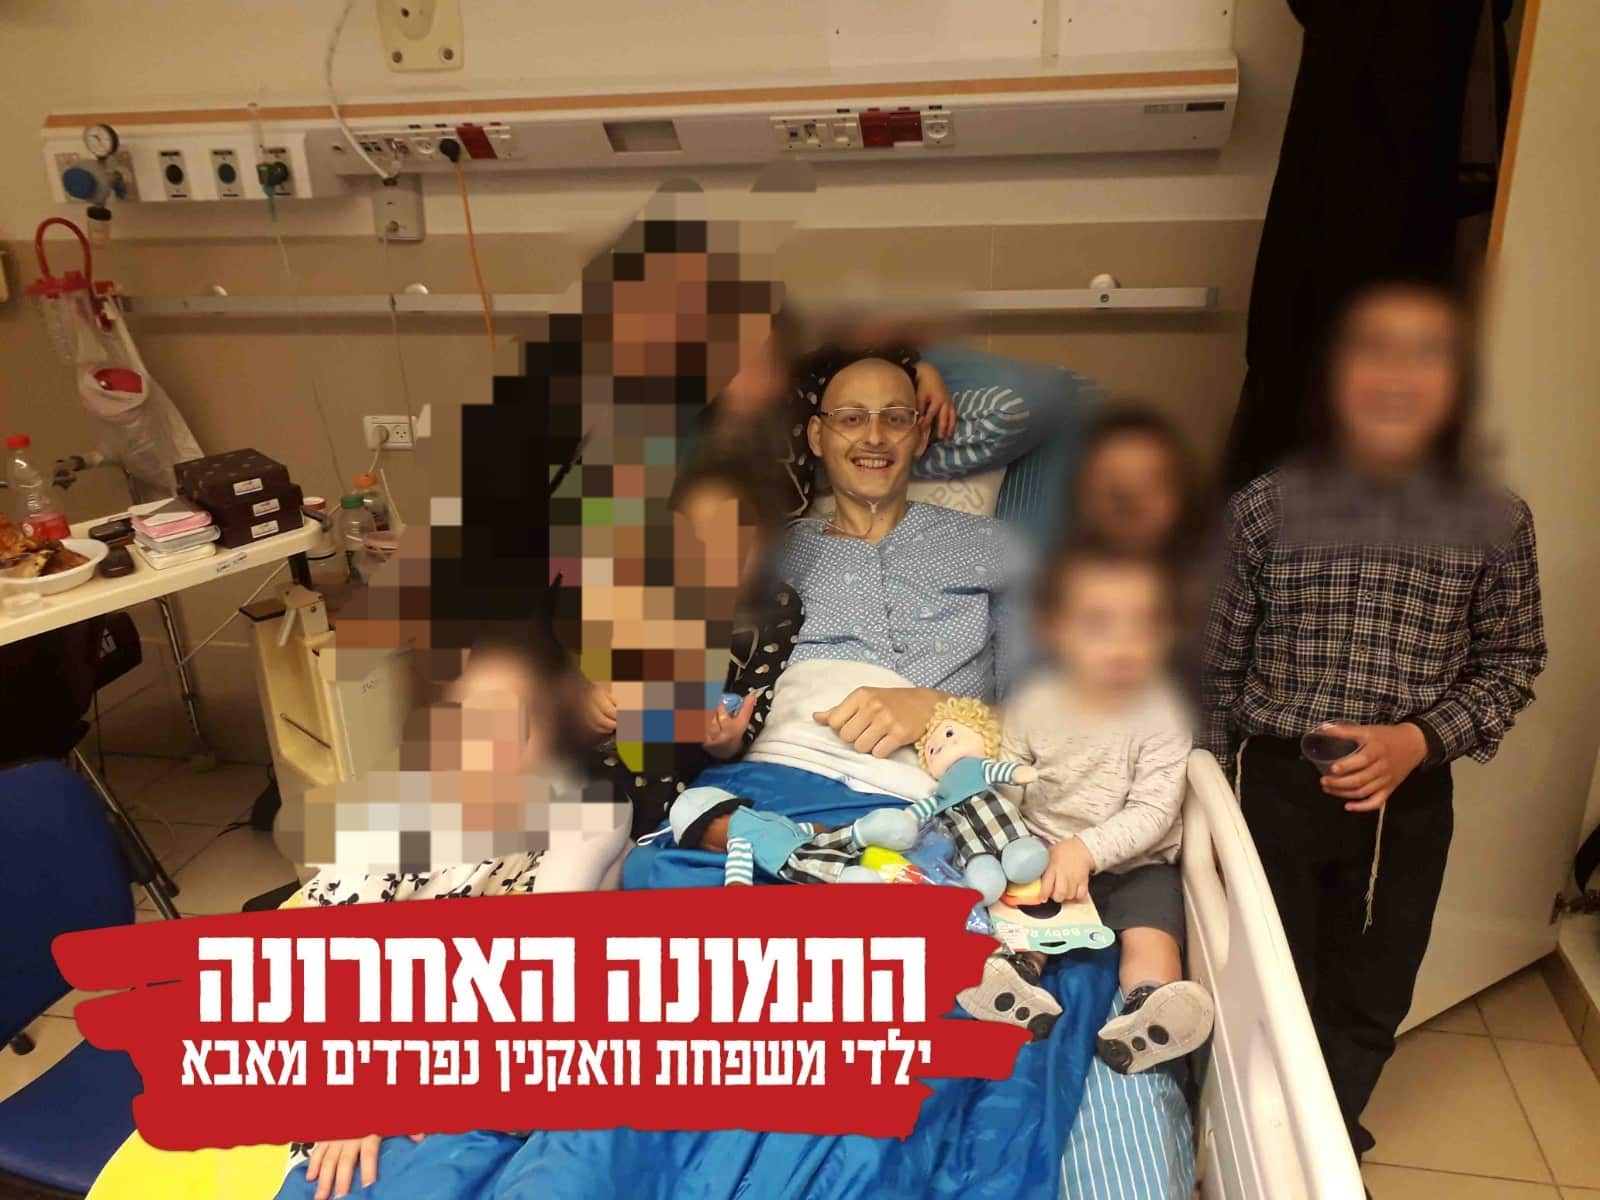 בפעם ה-16: גופת אישה מבוגרת נמצאה במצב בחיפה ריקבון